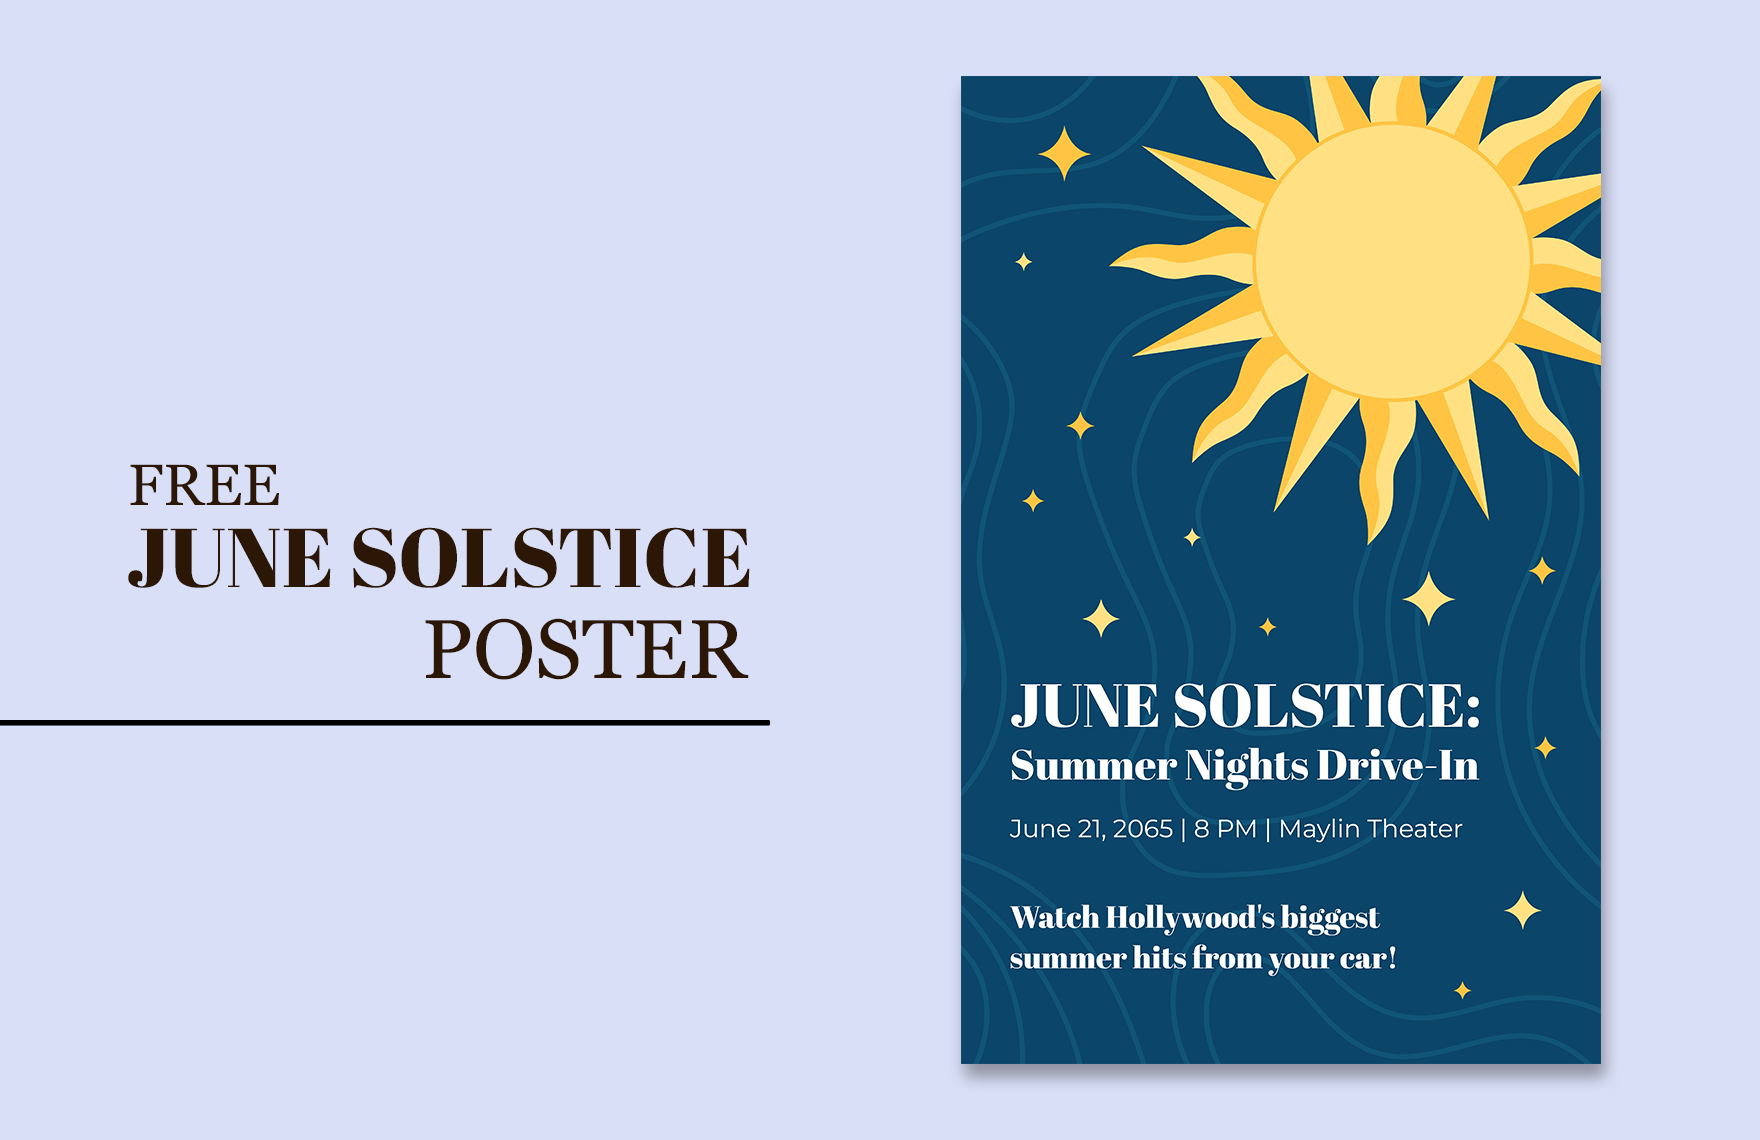 Free June Solstice Poster in Word, Google Docs, Illustrator, PSD, EPS, SVG, JPG, PNG